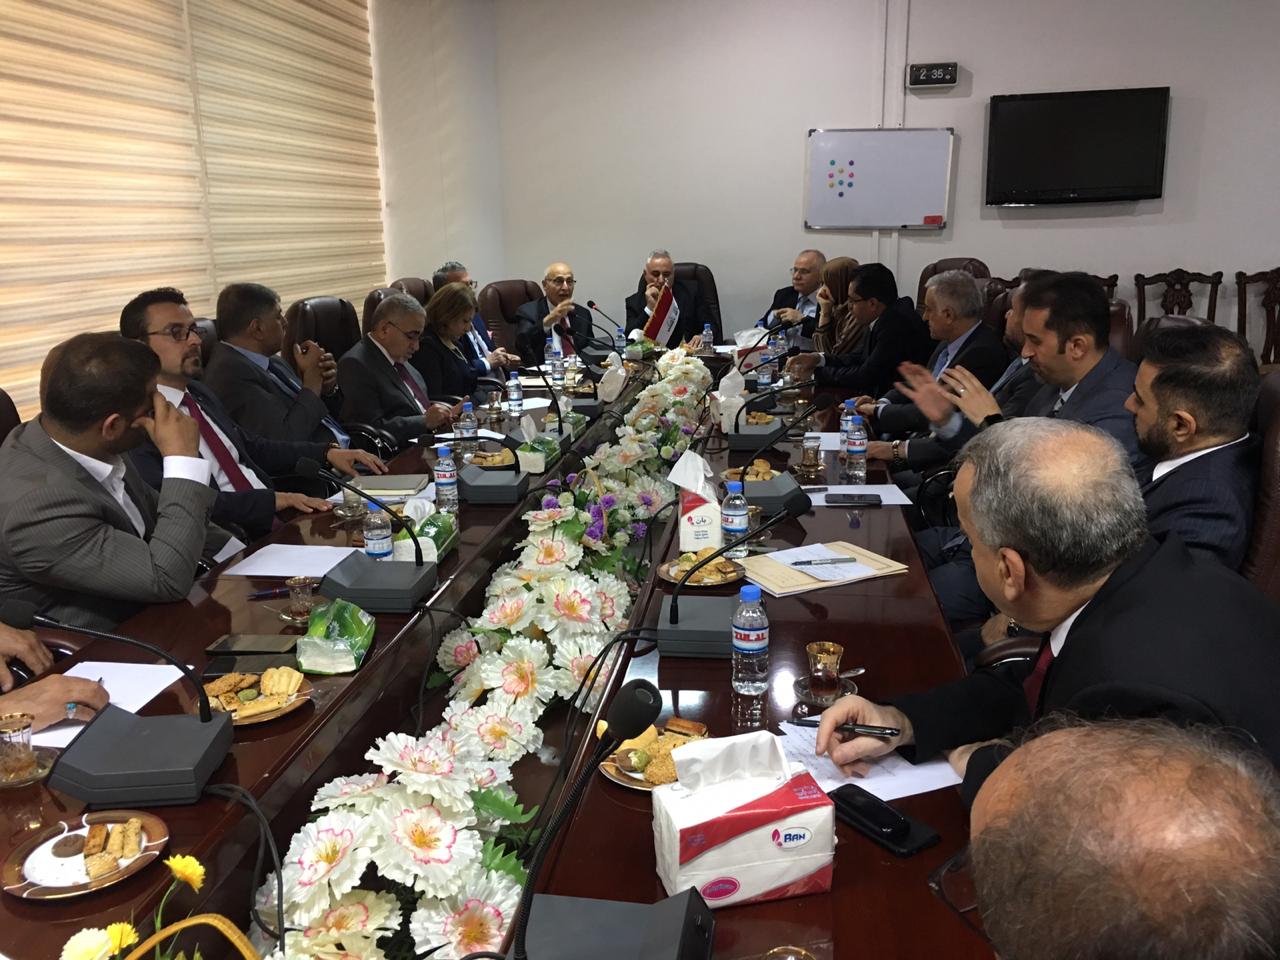 البرلمان العراقي يستضيف شعث لمناقشة "صفقة القرن"